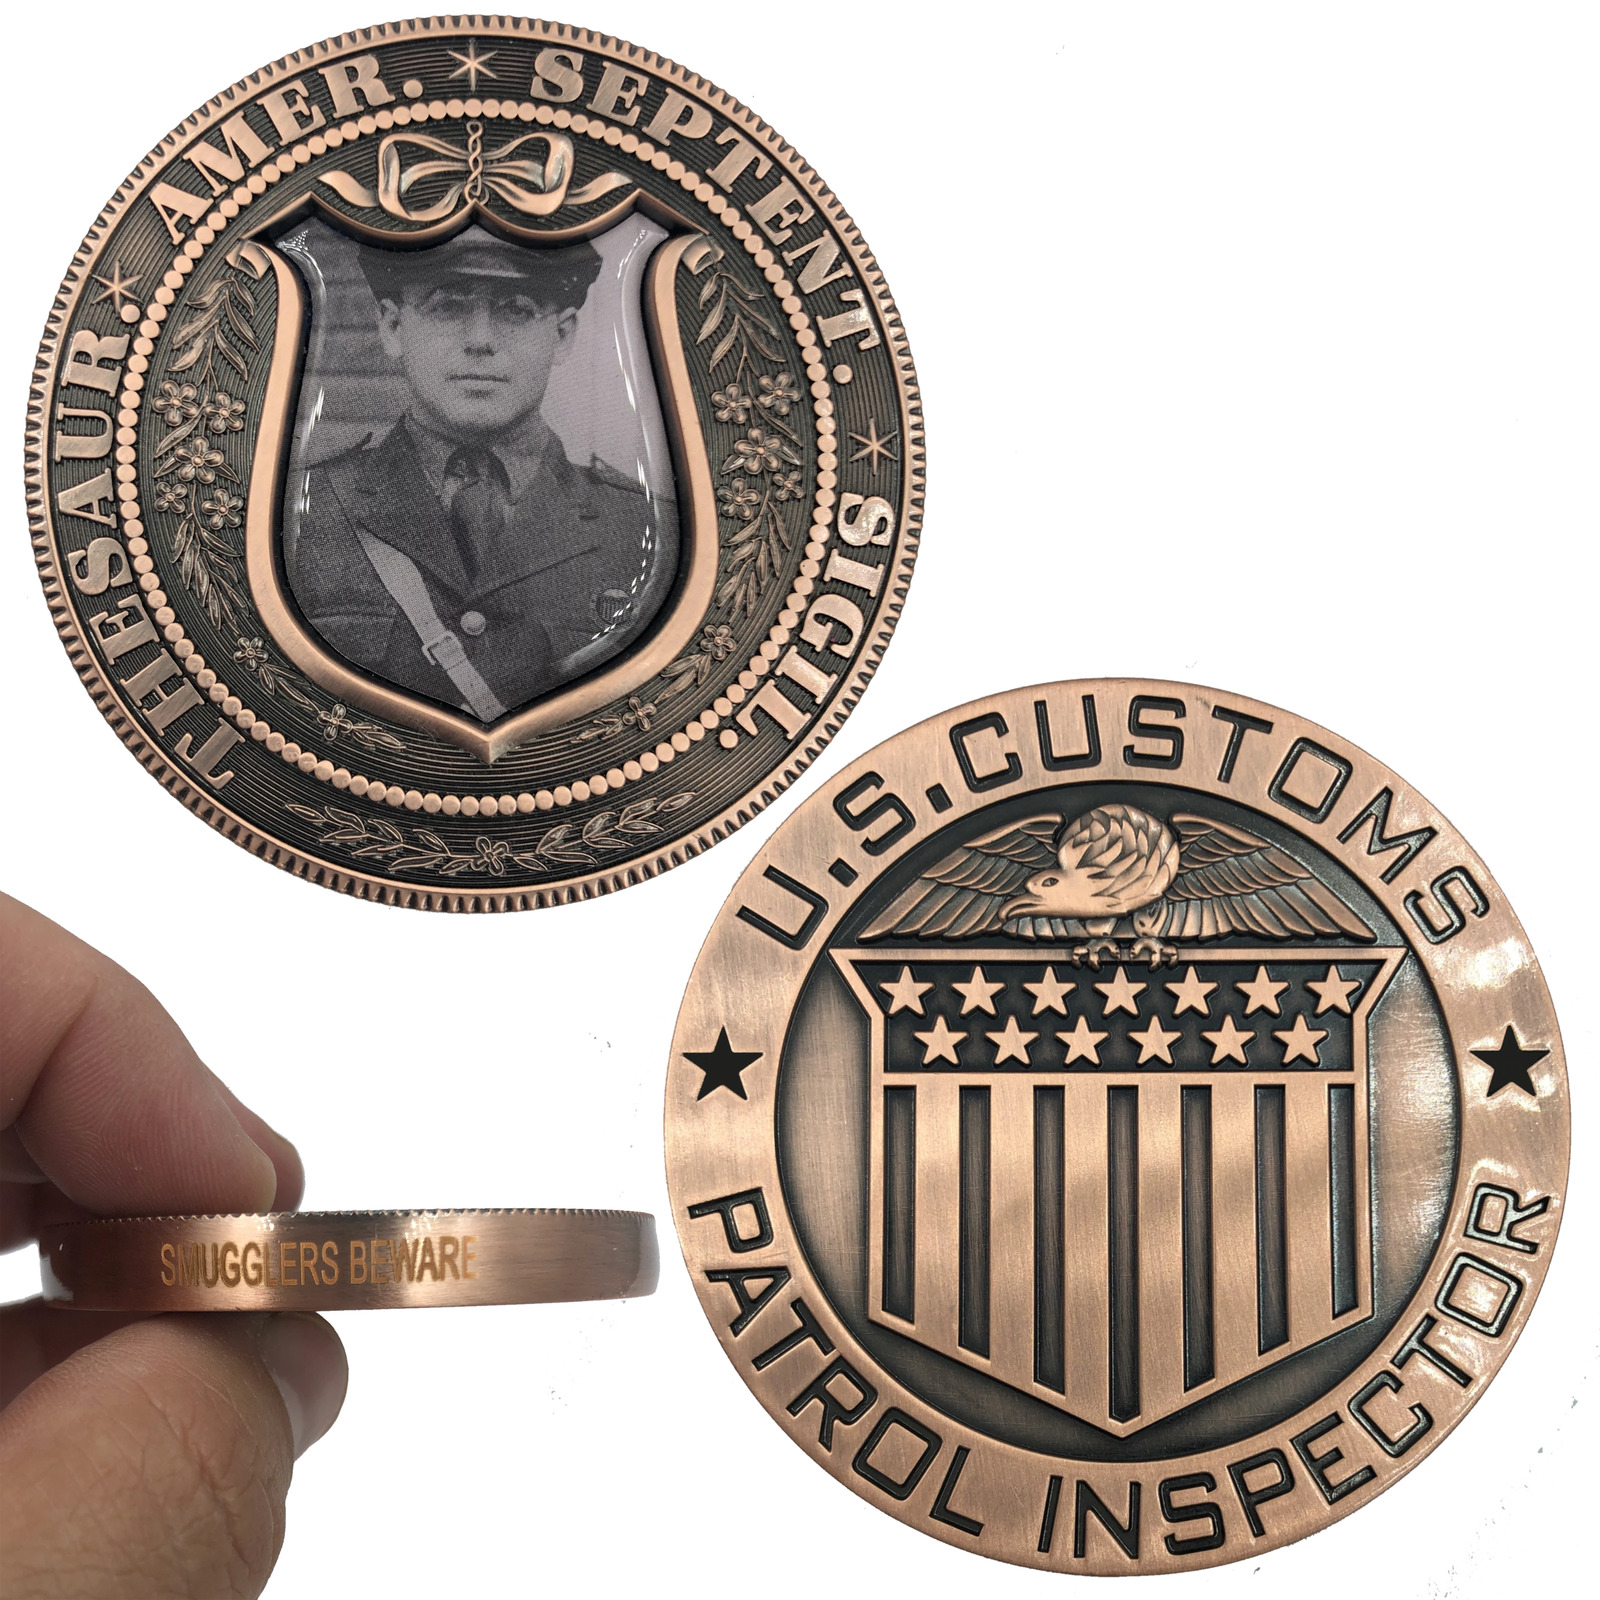 JJ-019 Smugglers Beware Vintage U.S. Customs Patrol Inspector Large Copper Chall